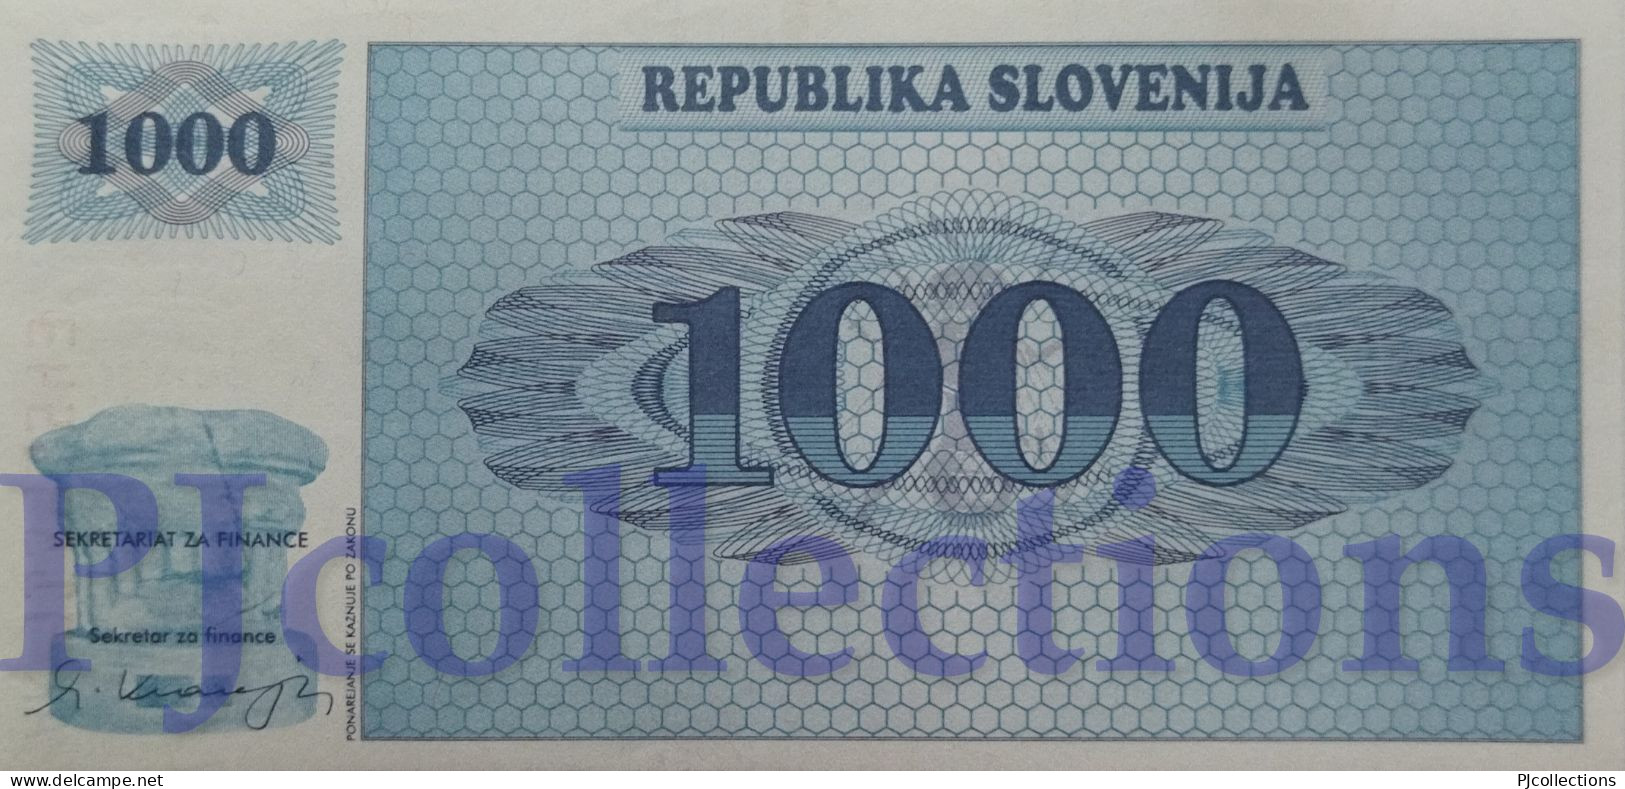 SLOVENIA 1000 TOLARJEV 1991 PICK 9a AU/UNC RARE - Slovenia